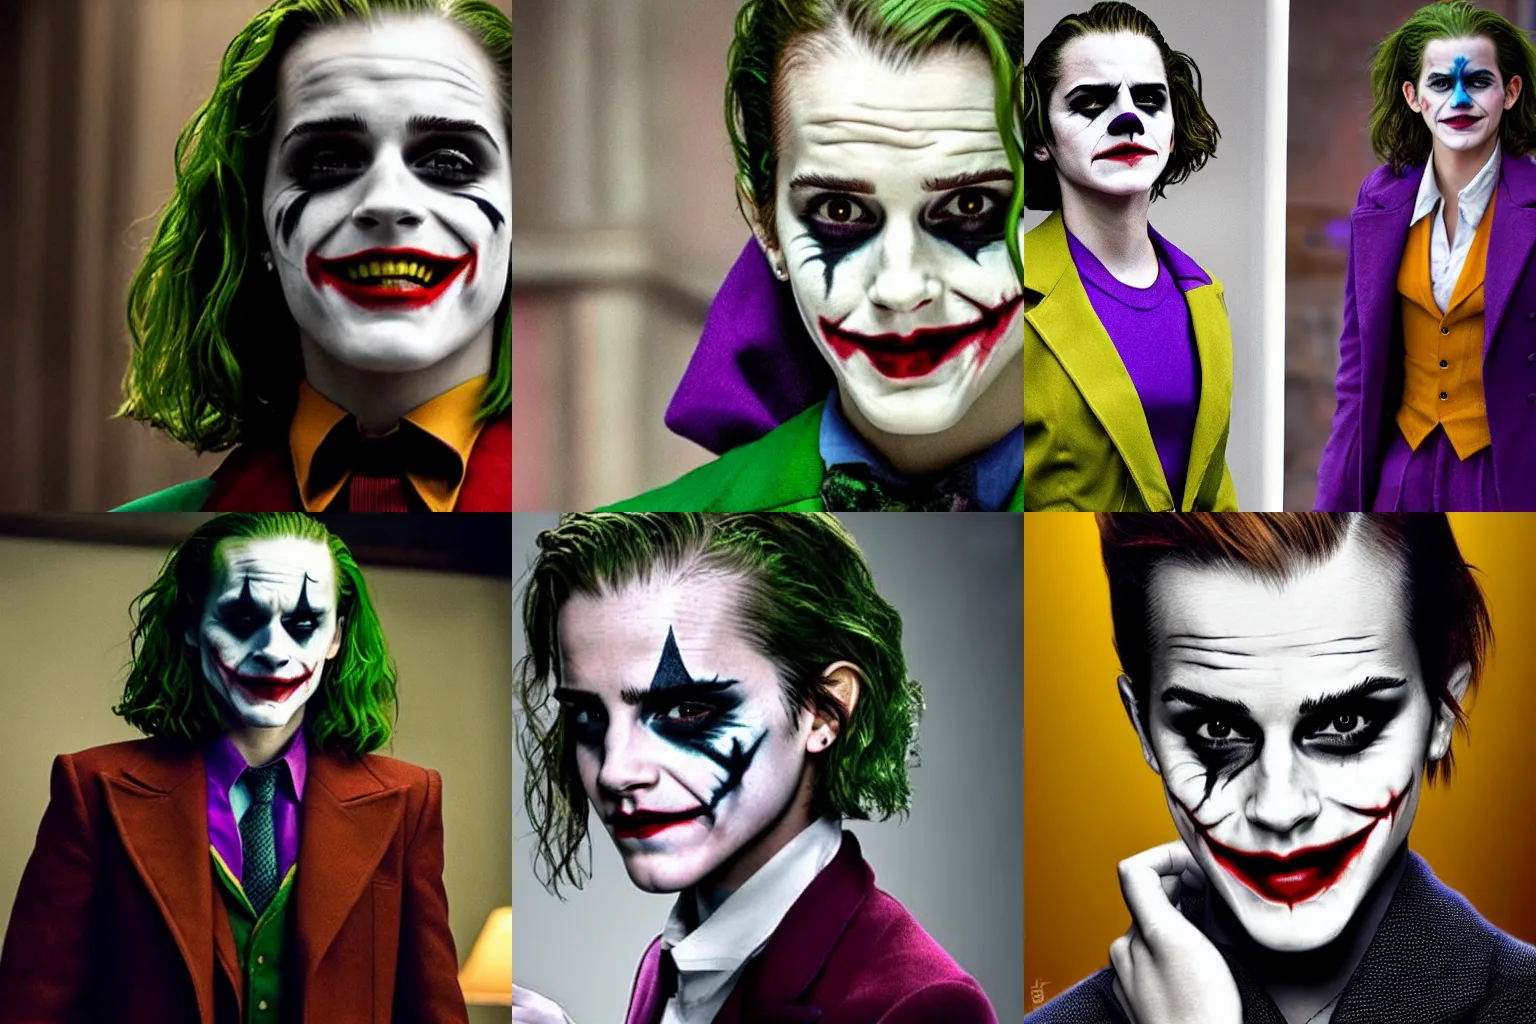 Prompt: Emma Watson as The Joker